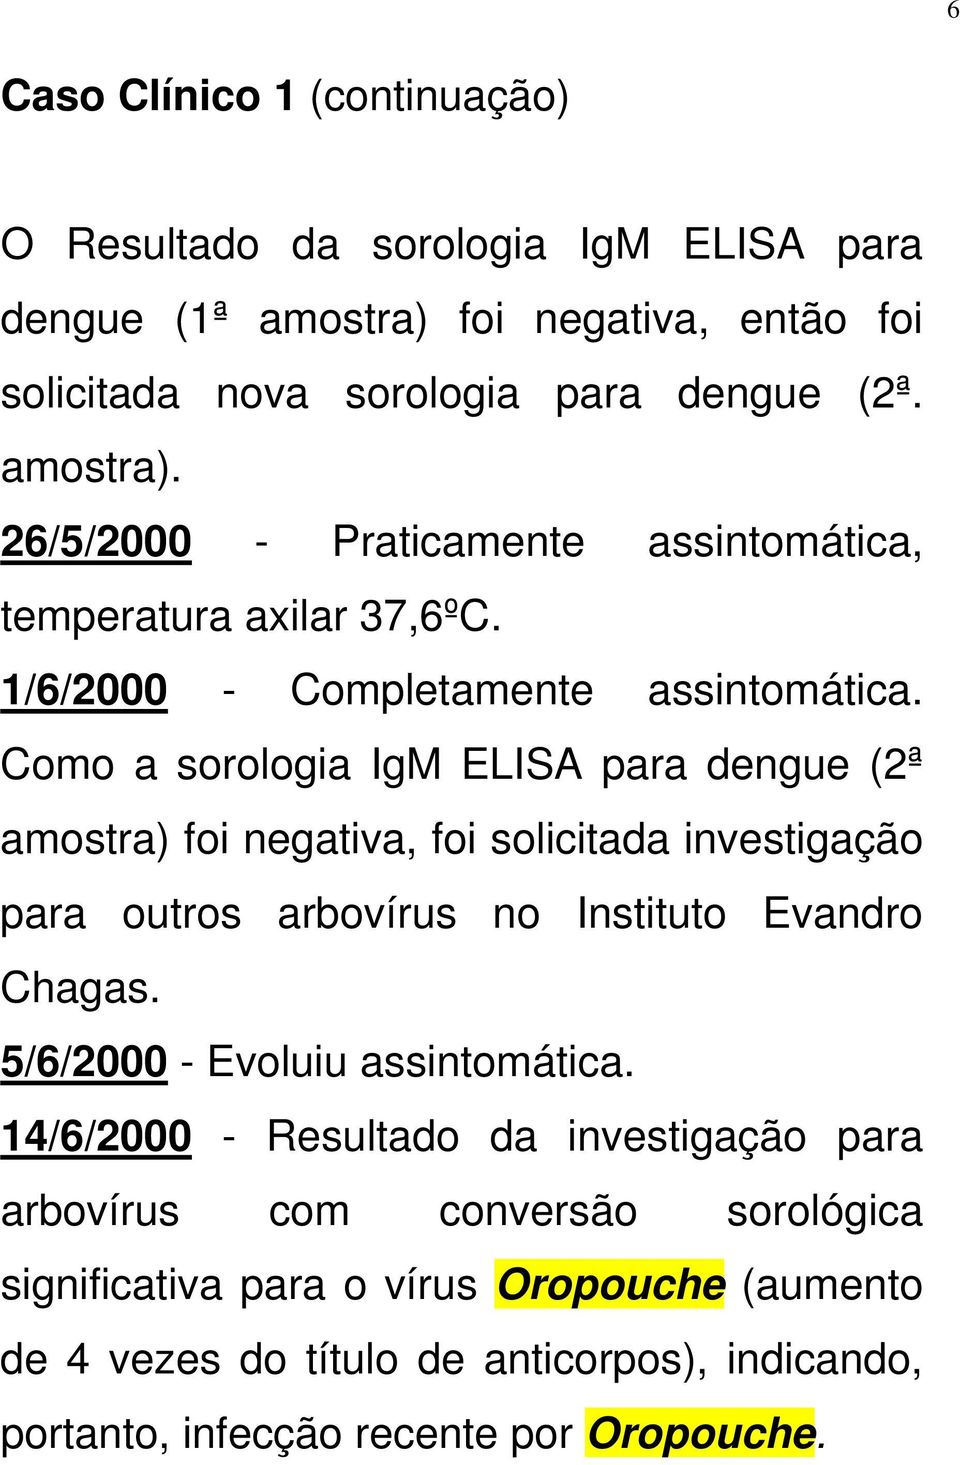 Como a sorologia IgM ELISA para dengue (2ª amostra) foi negativa, foi solicitada investigação para outros arbovírus no Instituto Evandro Chagas.